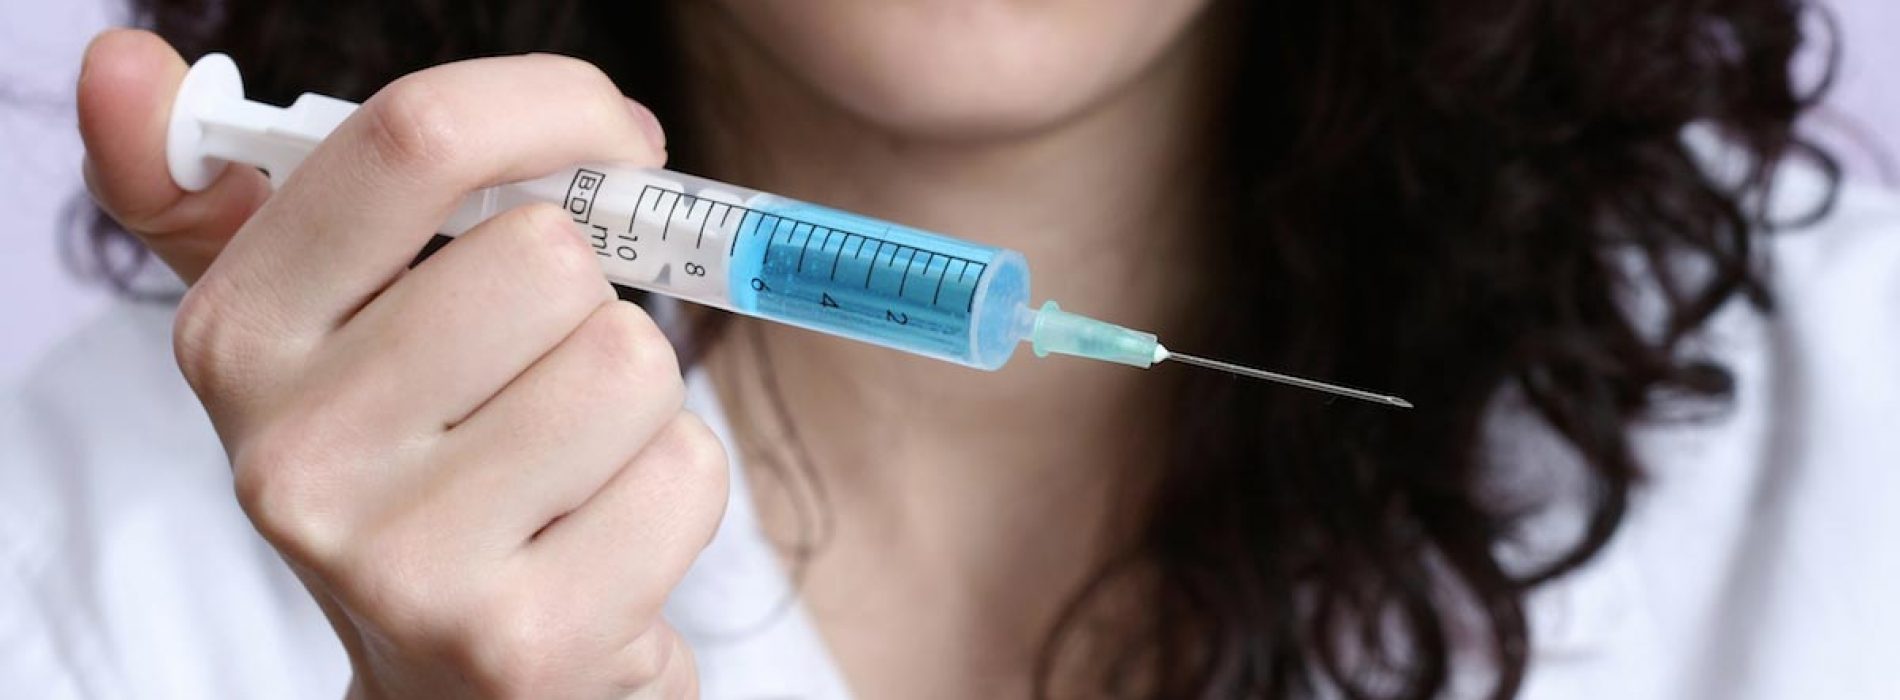 Is het mazelenvaccin gevaarlijker dan de ziekte?